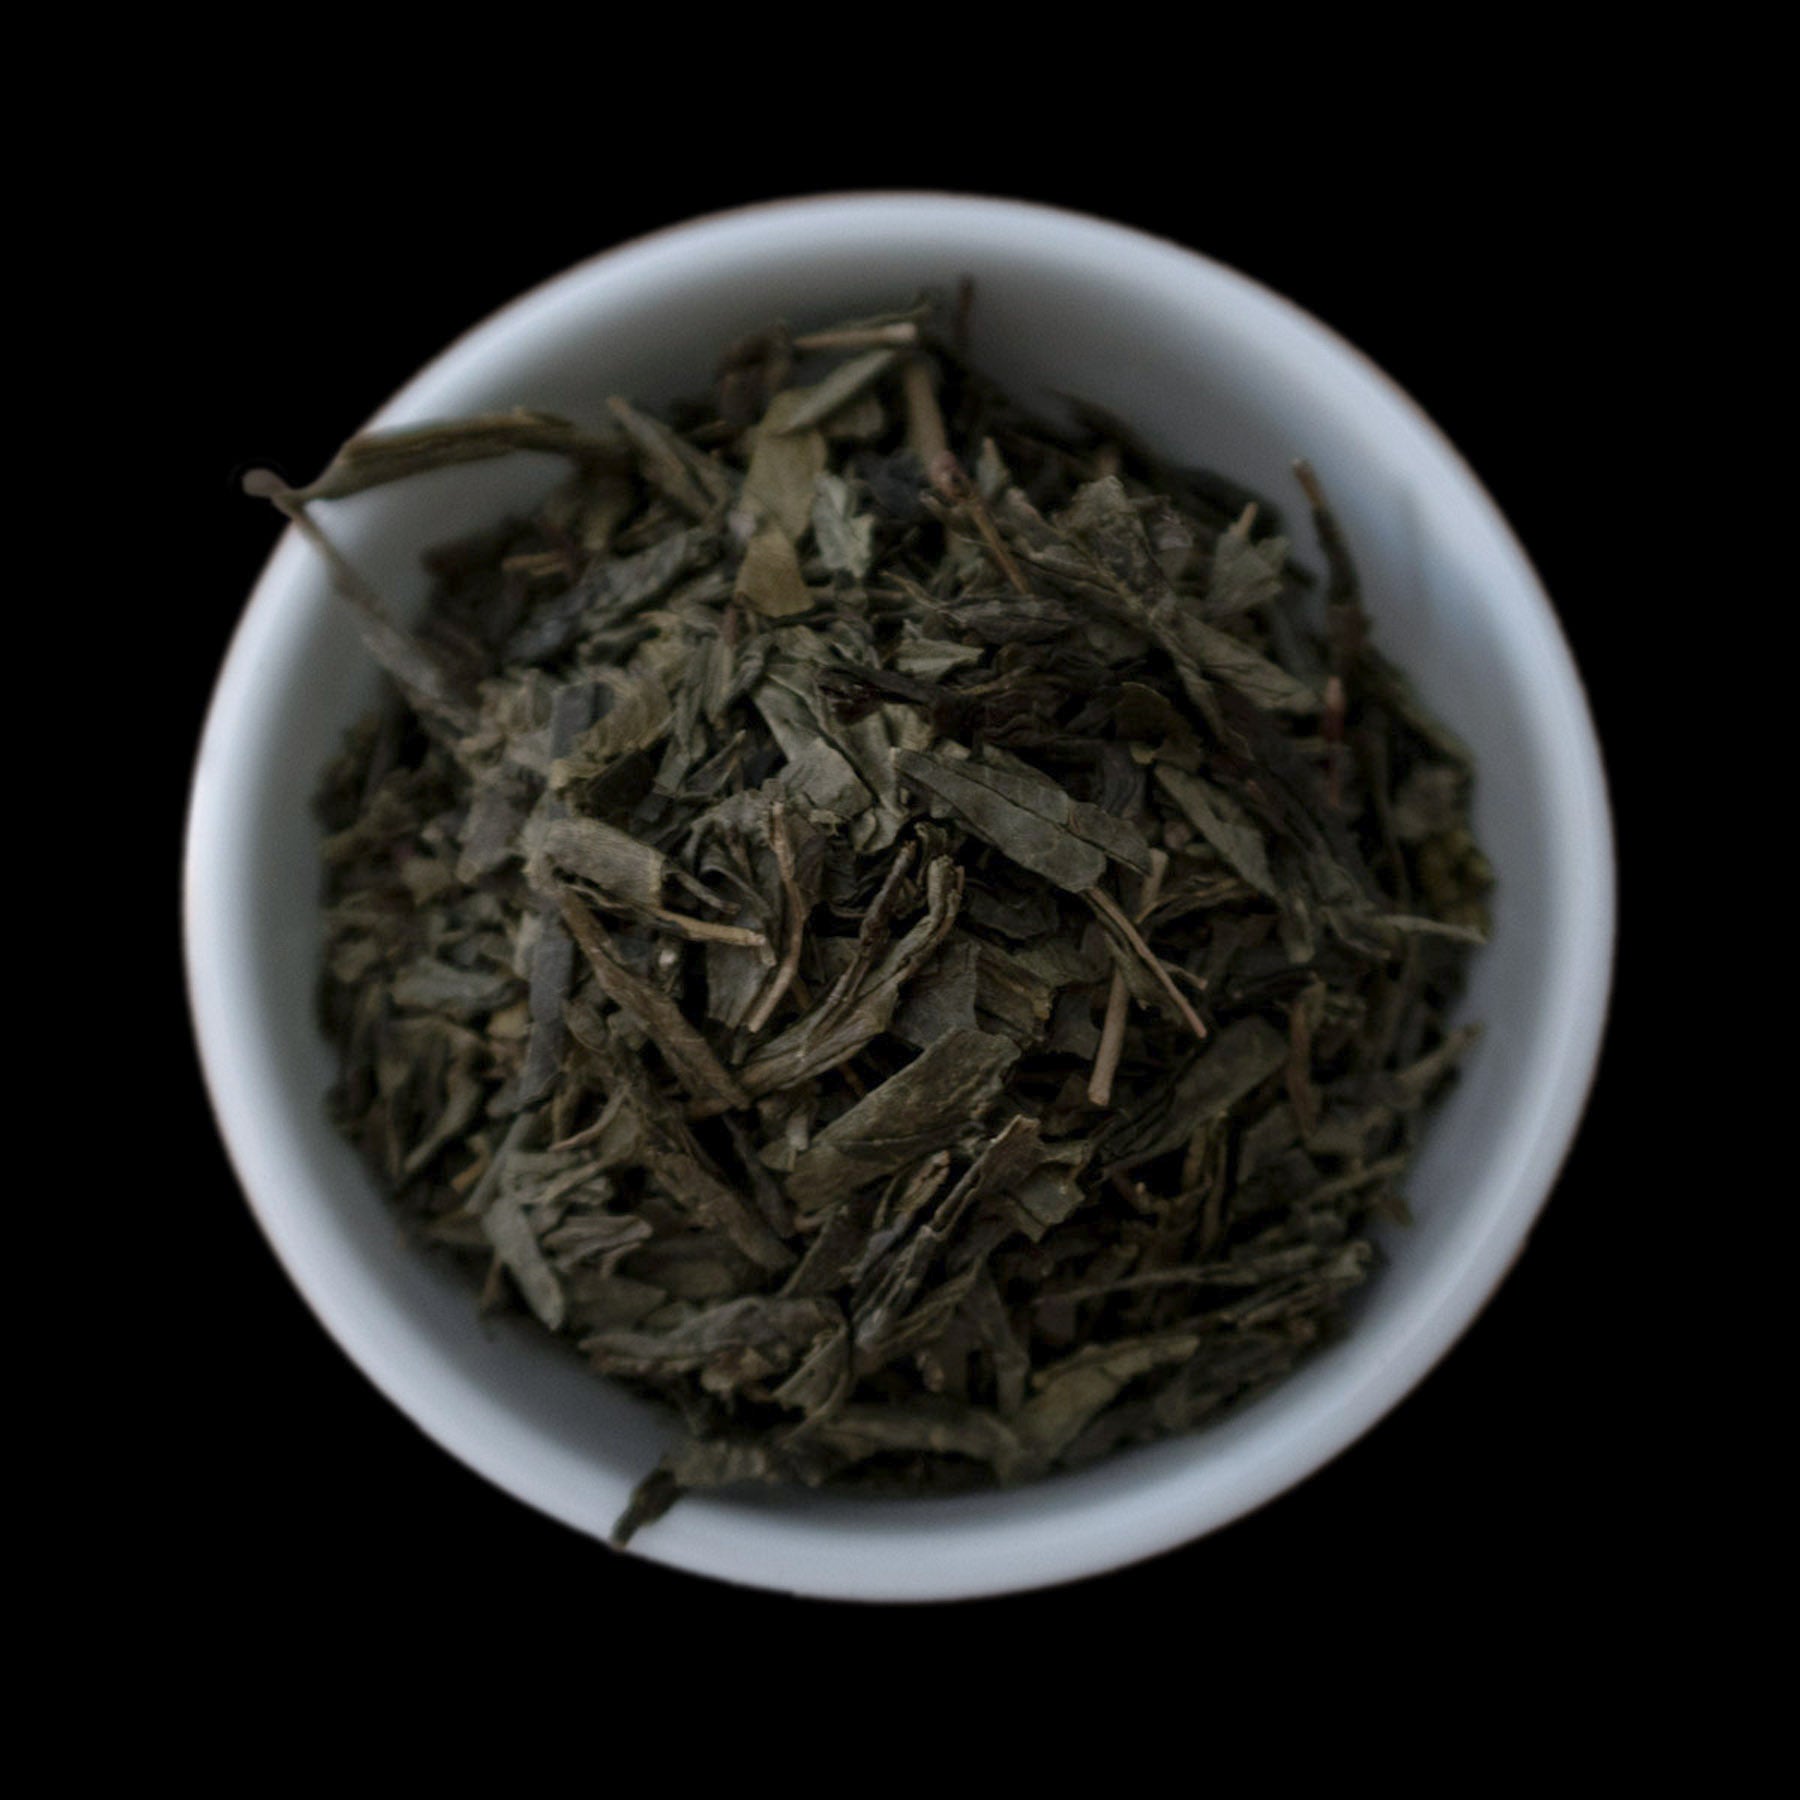 Green Sencha tea leaves